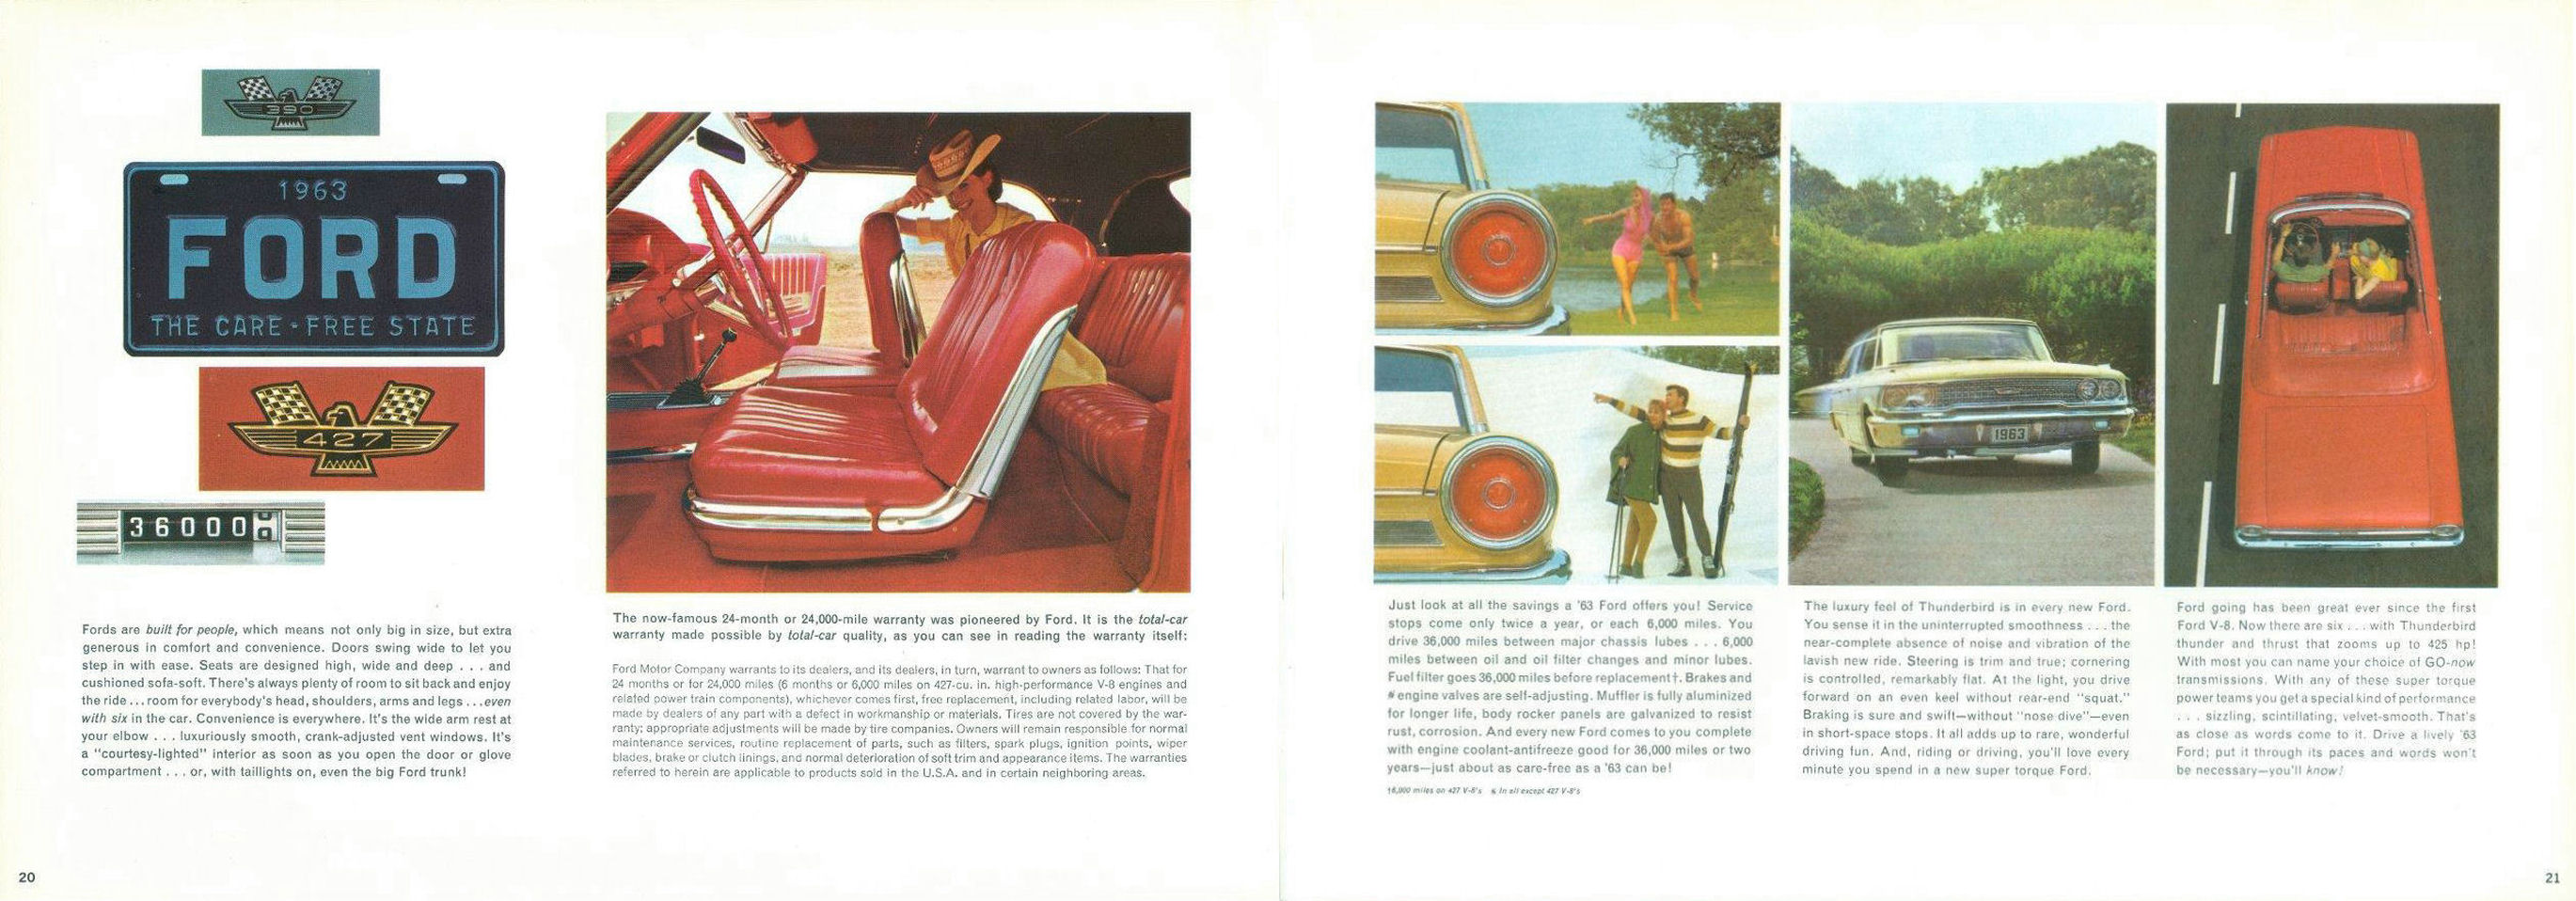 1963_Ford_Full_Size_Rev-20-21